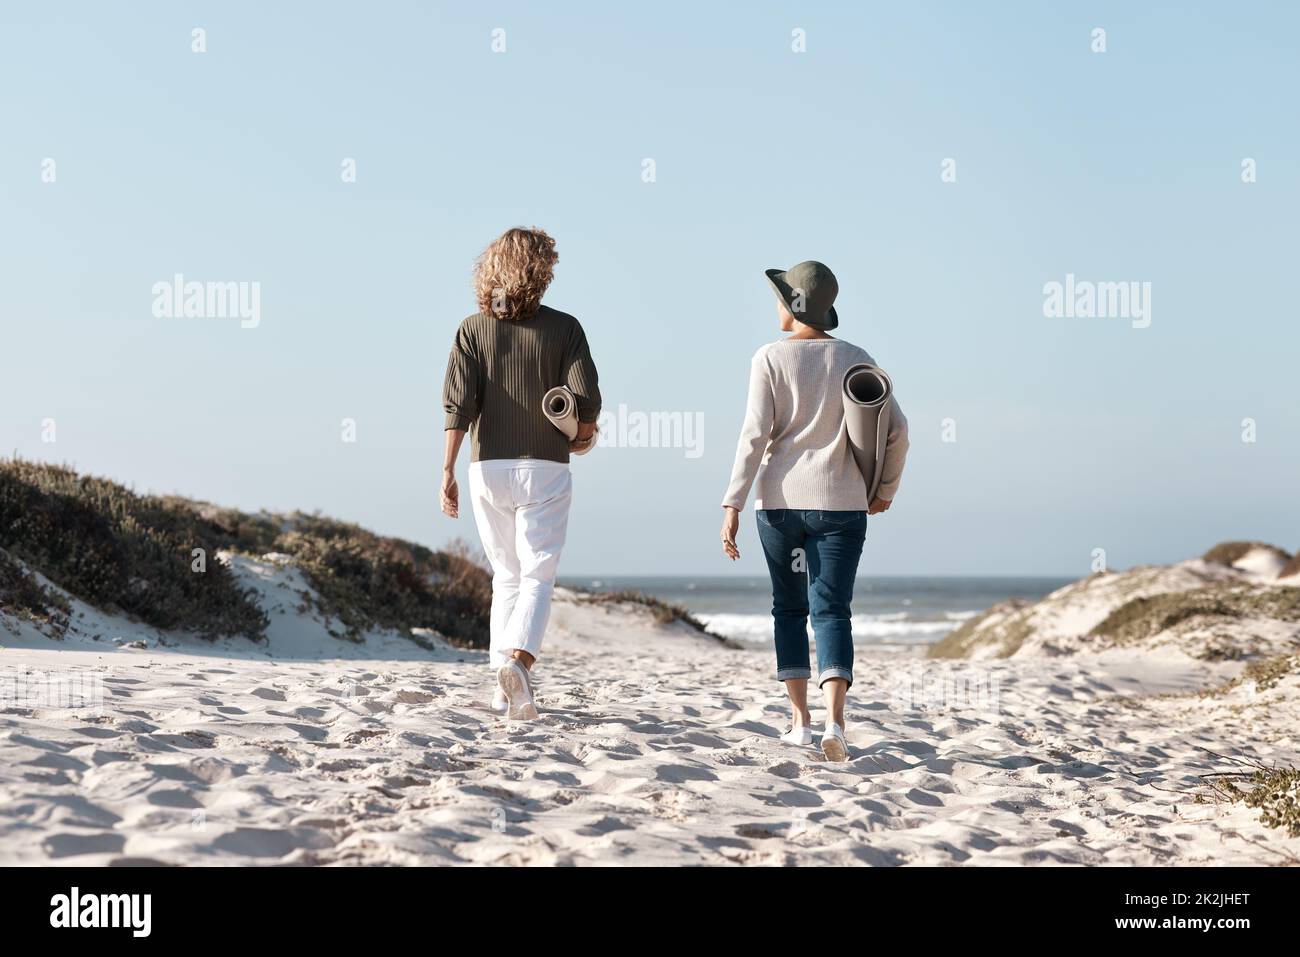 Machen Sie sich auf den Weg, um den perfekten Ort zu finden. Rückansicht von zwei nicht erkennbaren Frauen, die mit ihren Matten am Strand spazieren. Stockfoto